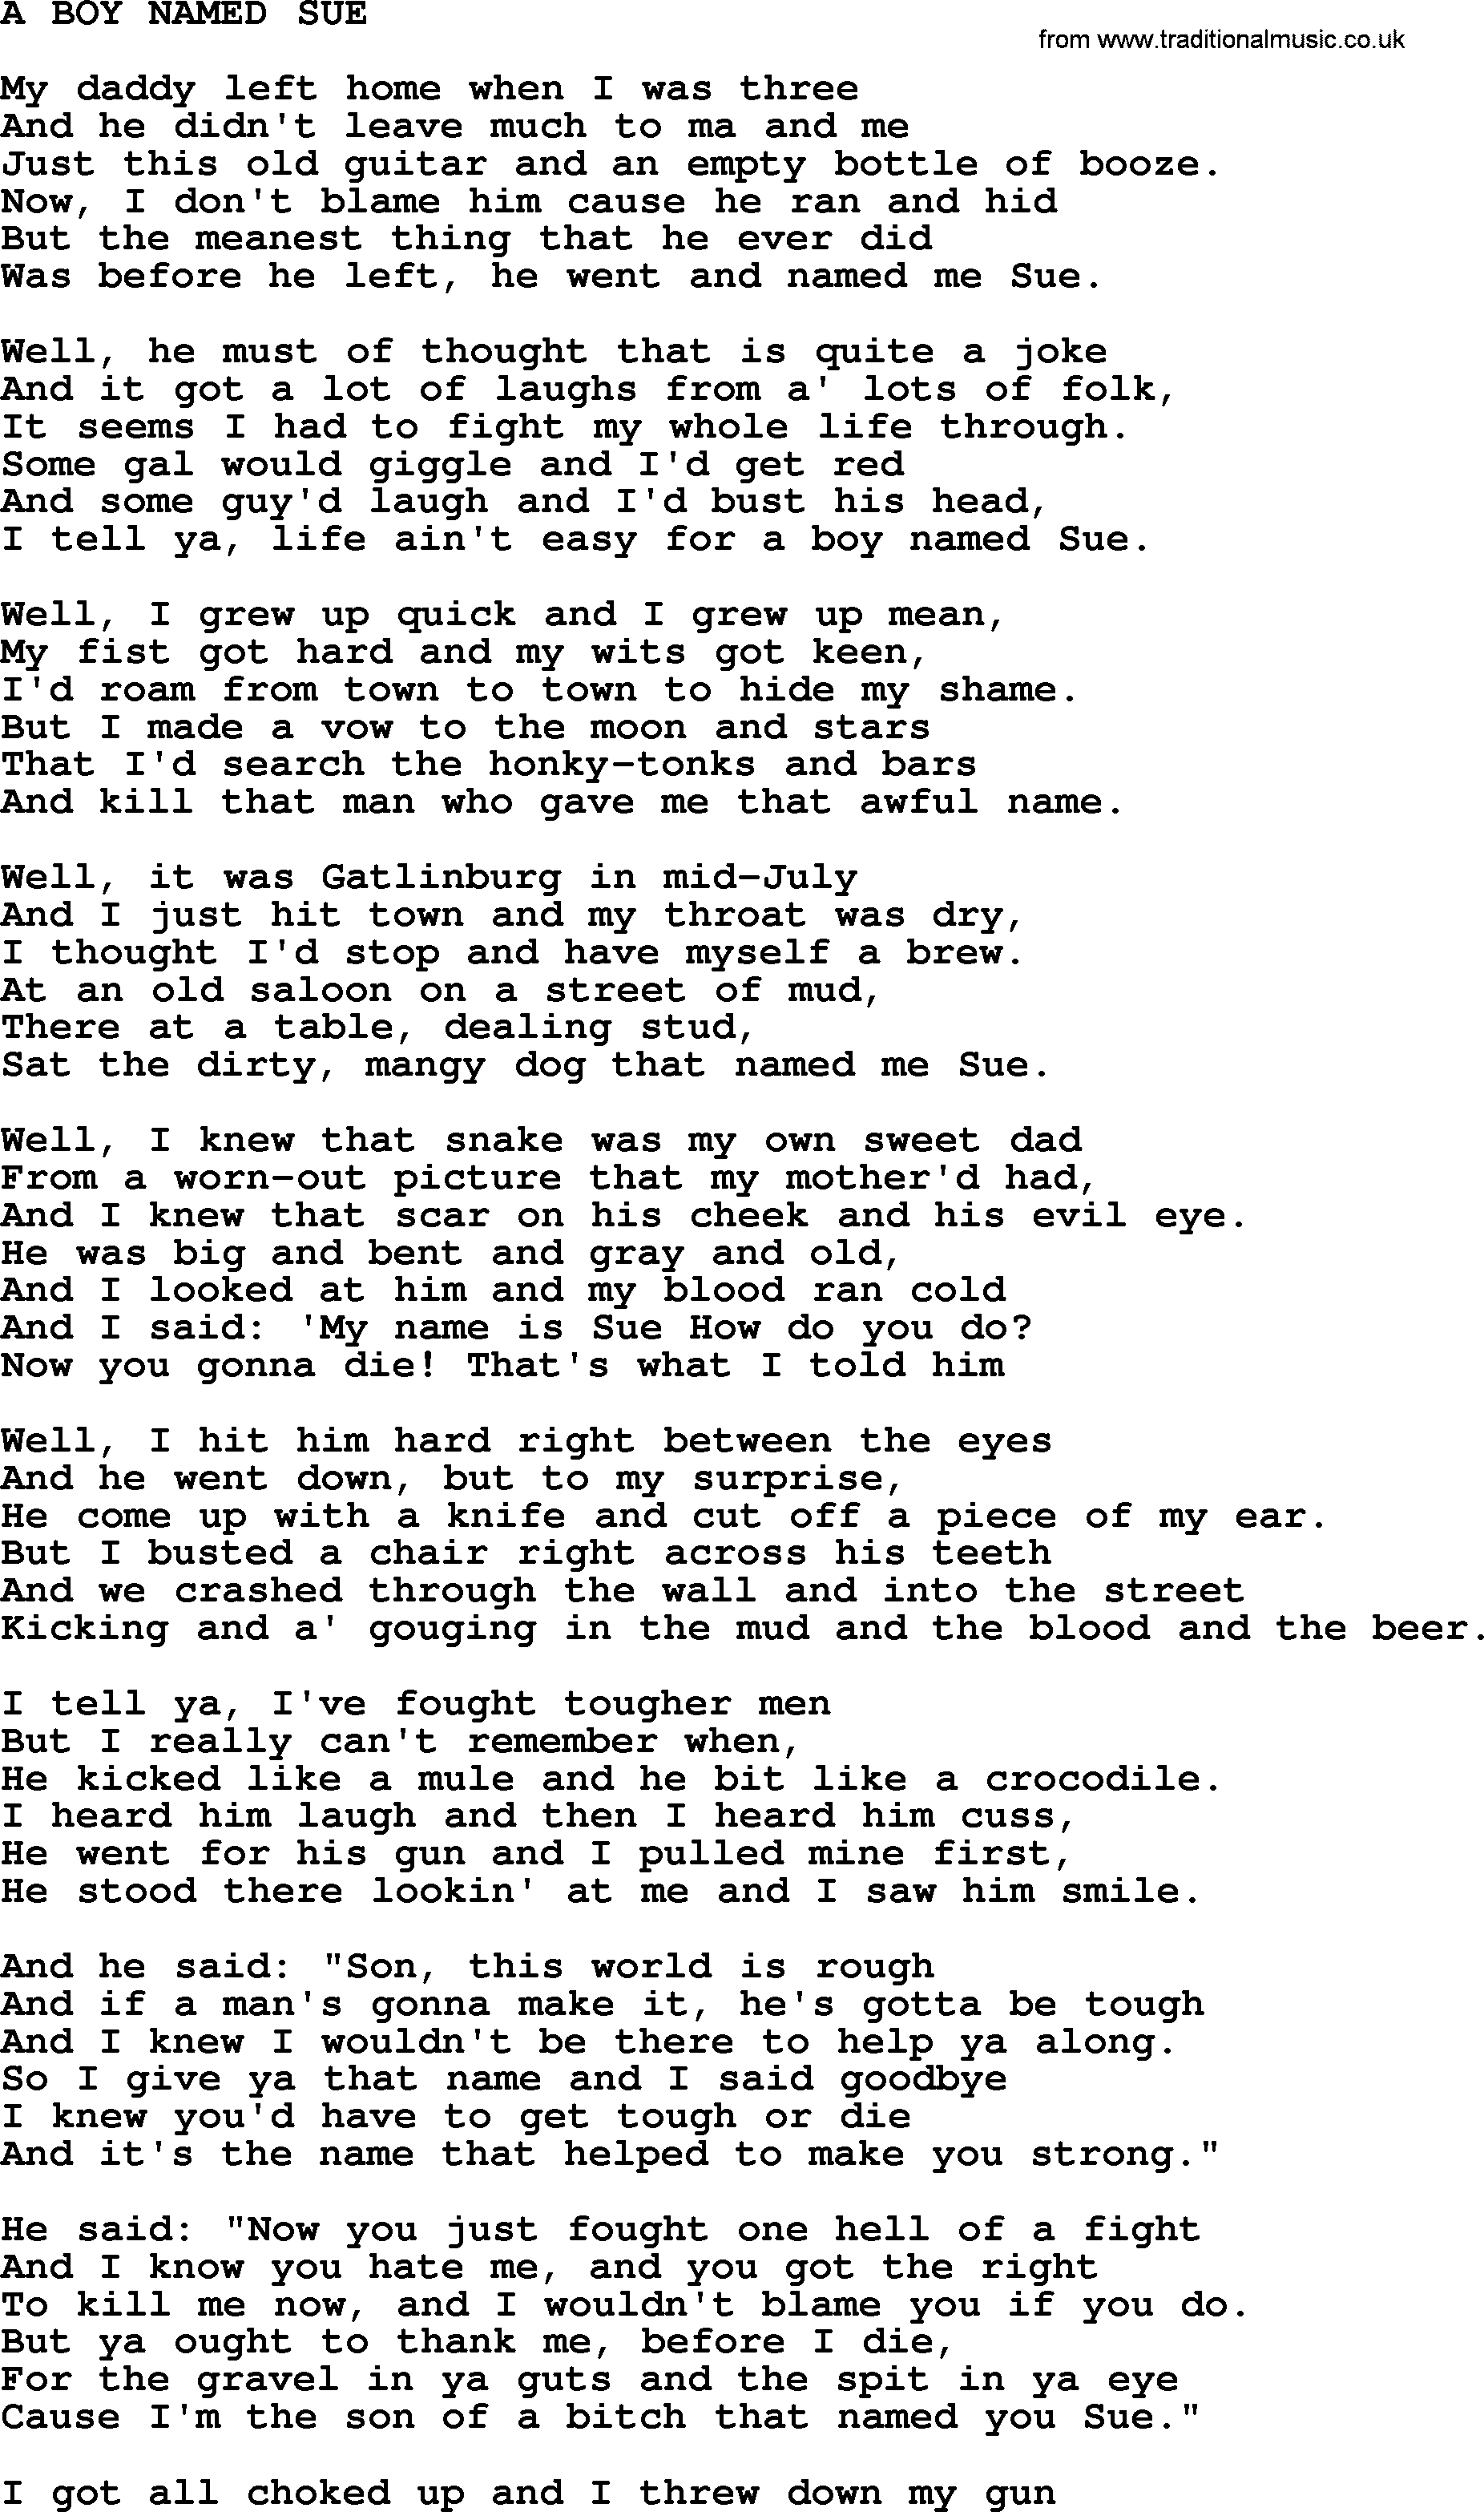 Johnny Cash song A Boy Named Sue.txt lyrics